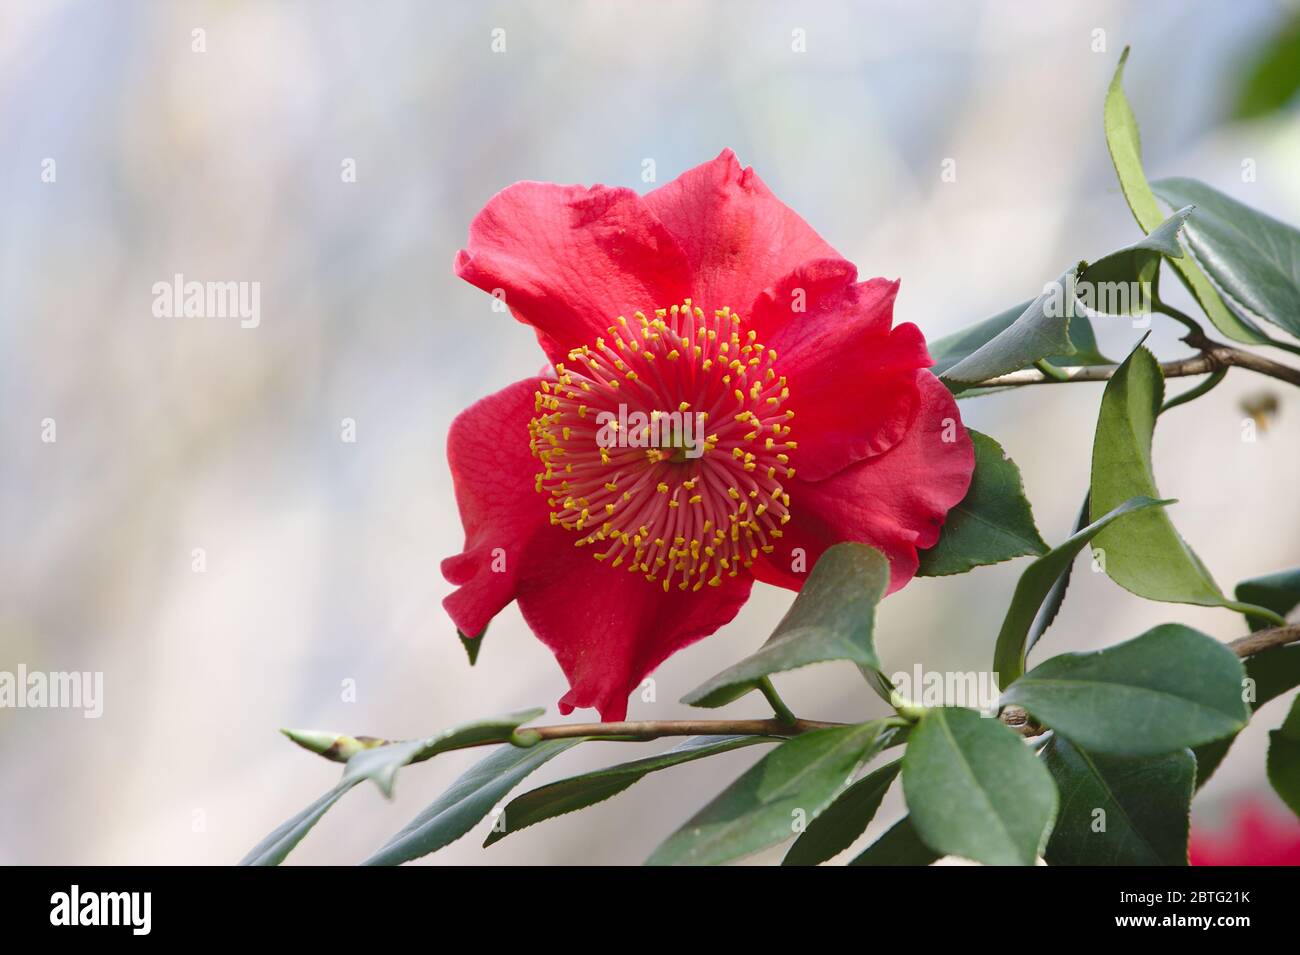 Photo en gros plan du camélia rouge. Theaceae camellia japonica Momiji-Gari en gros plan dans le jardin. Banque D'Images